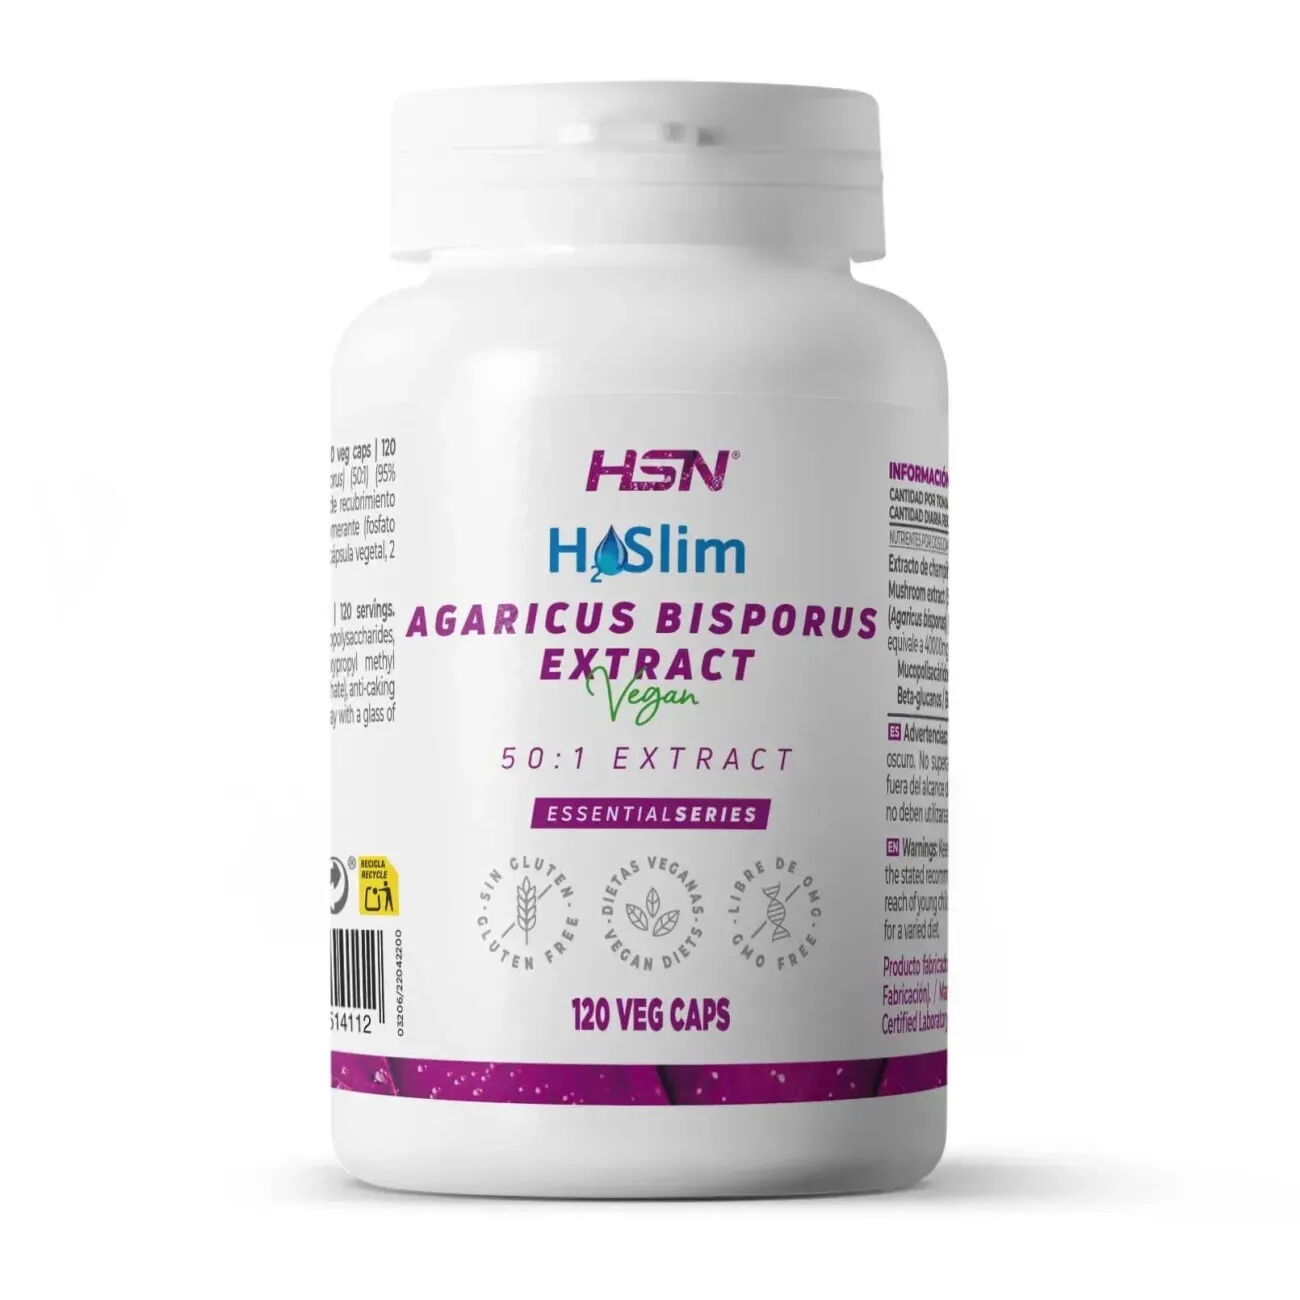 HSN Extracto de agaricus bisporus (h2o slim®) 400mg - 120 veg caps